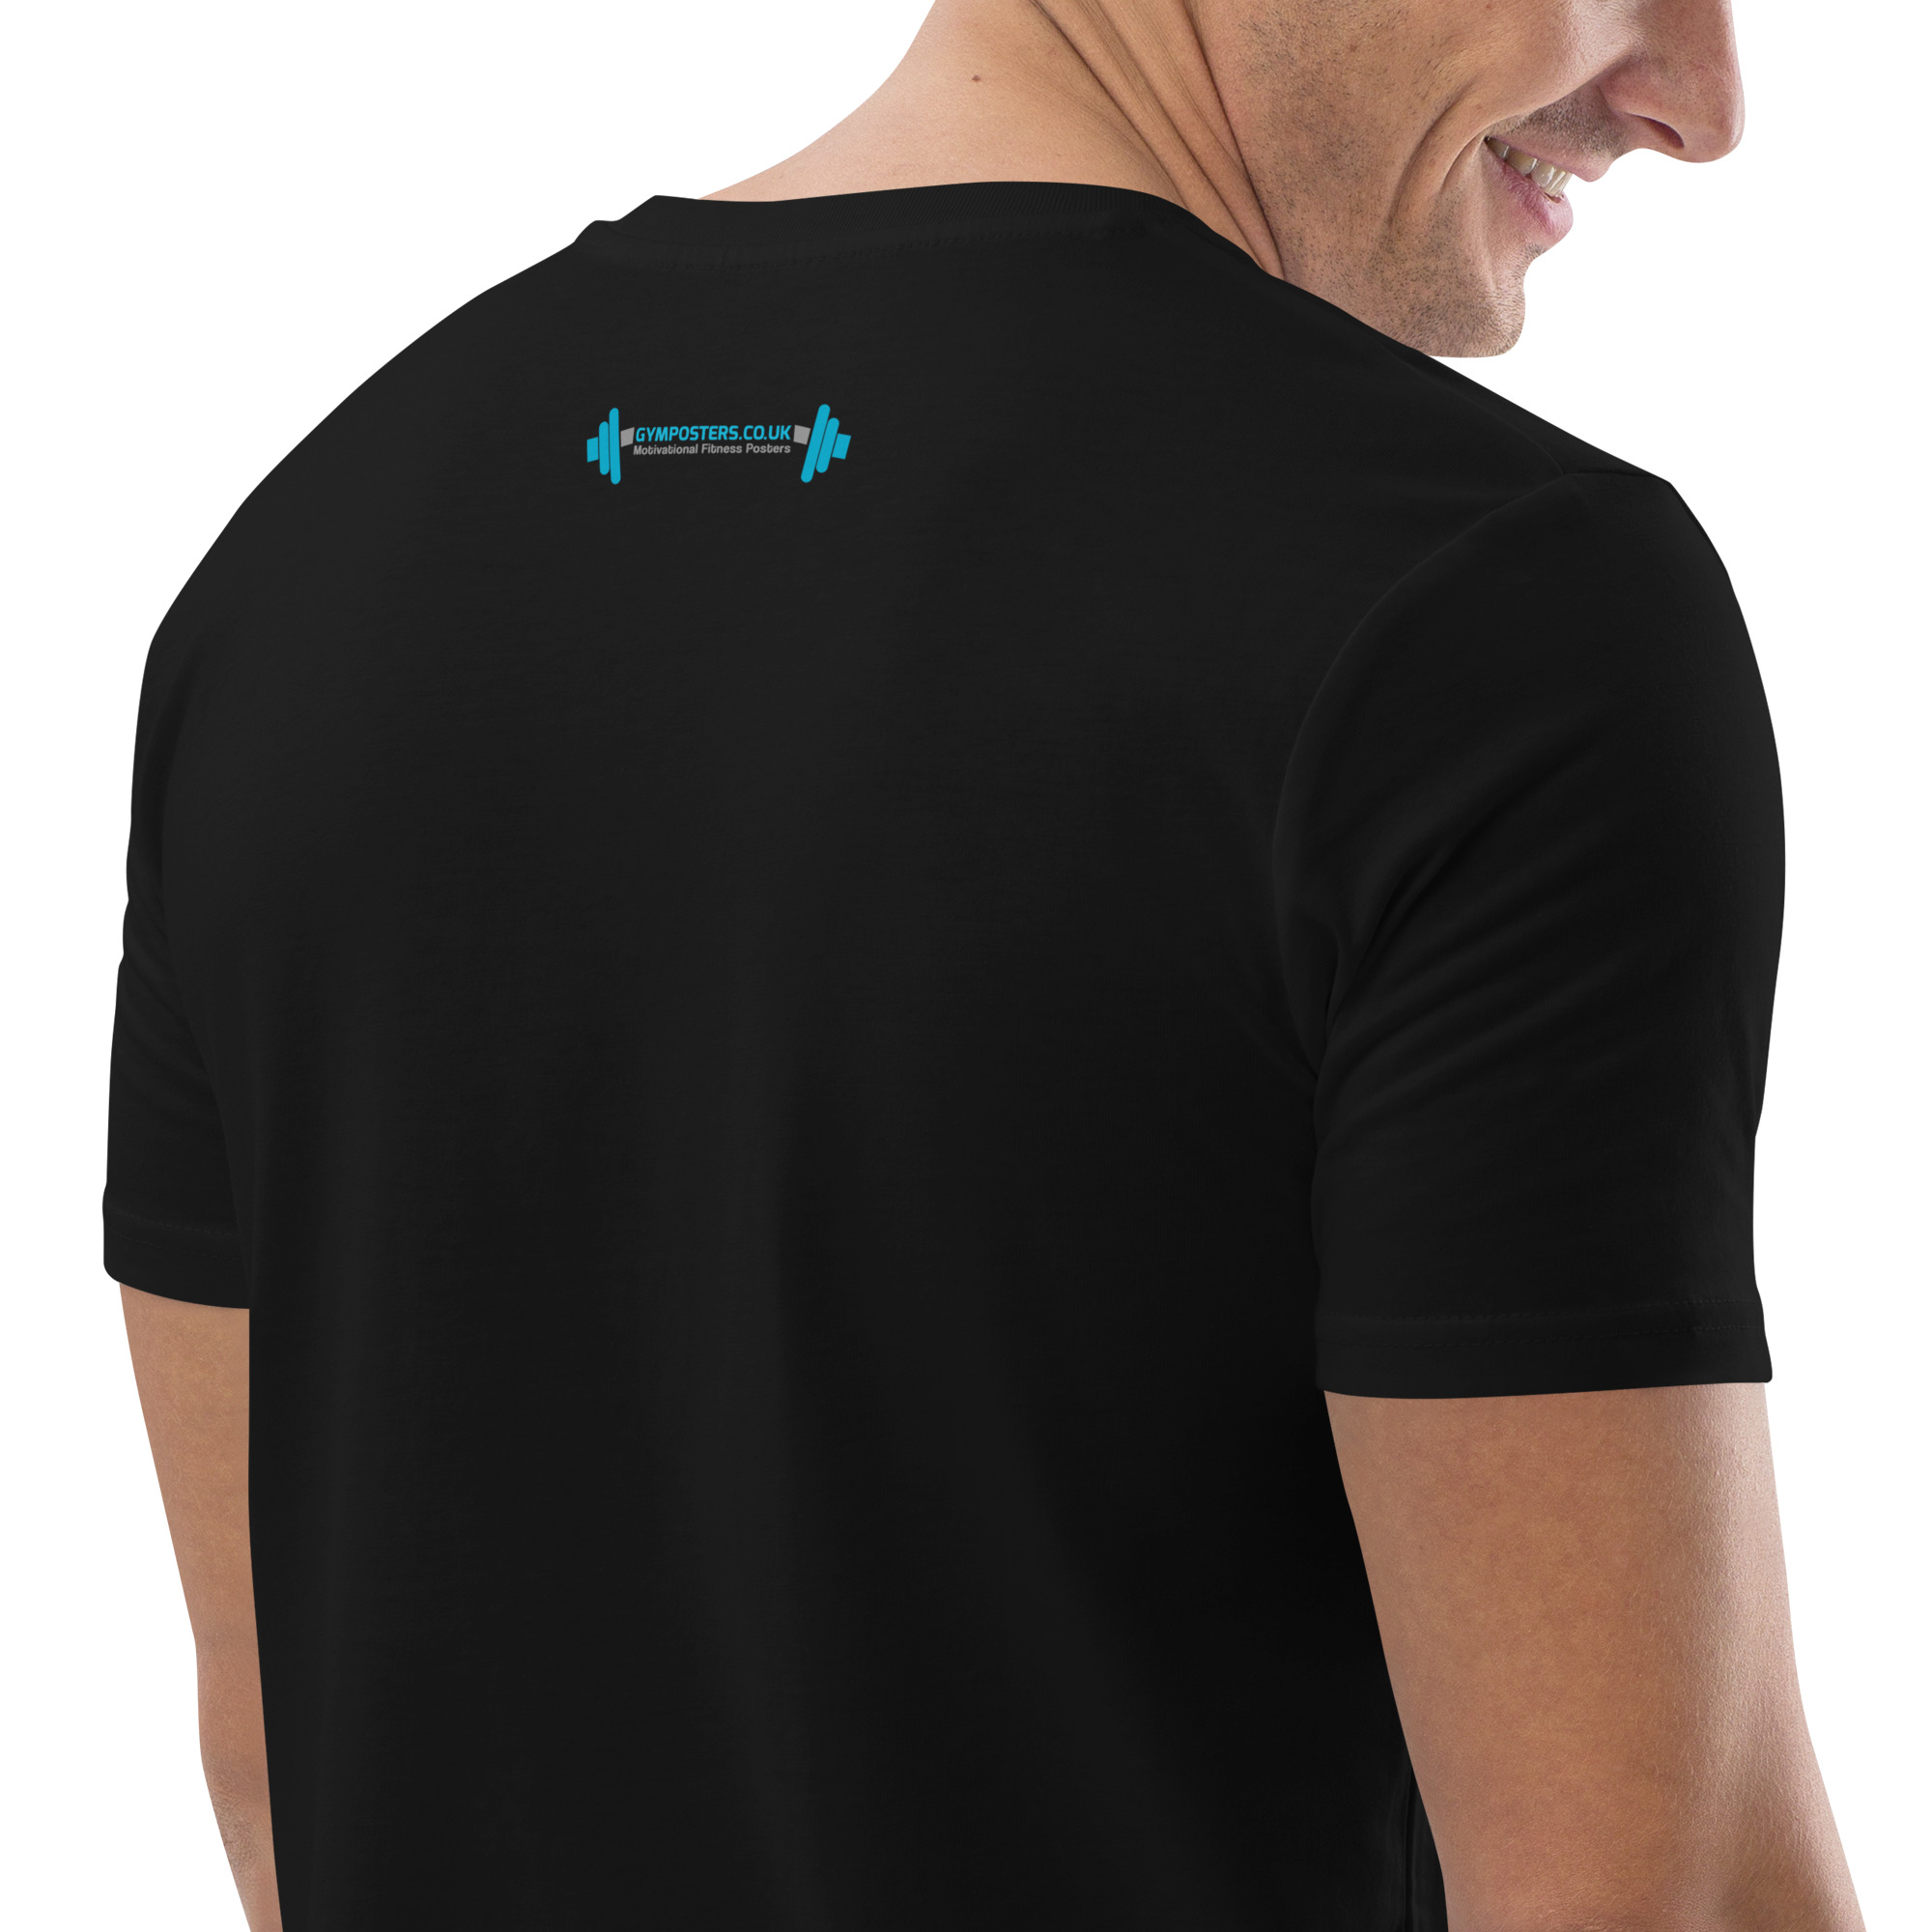 unisex-organic-cotton-t-shirt-black-zoomed-in-3-6578572d368e5.jpg